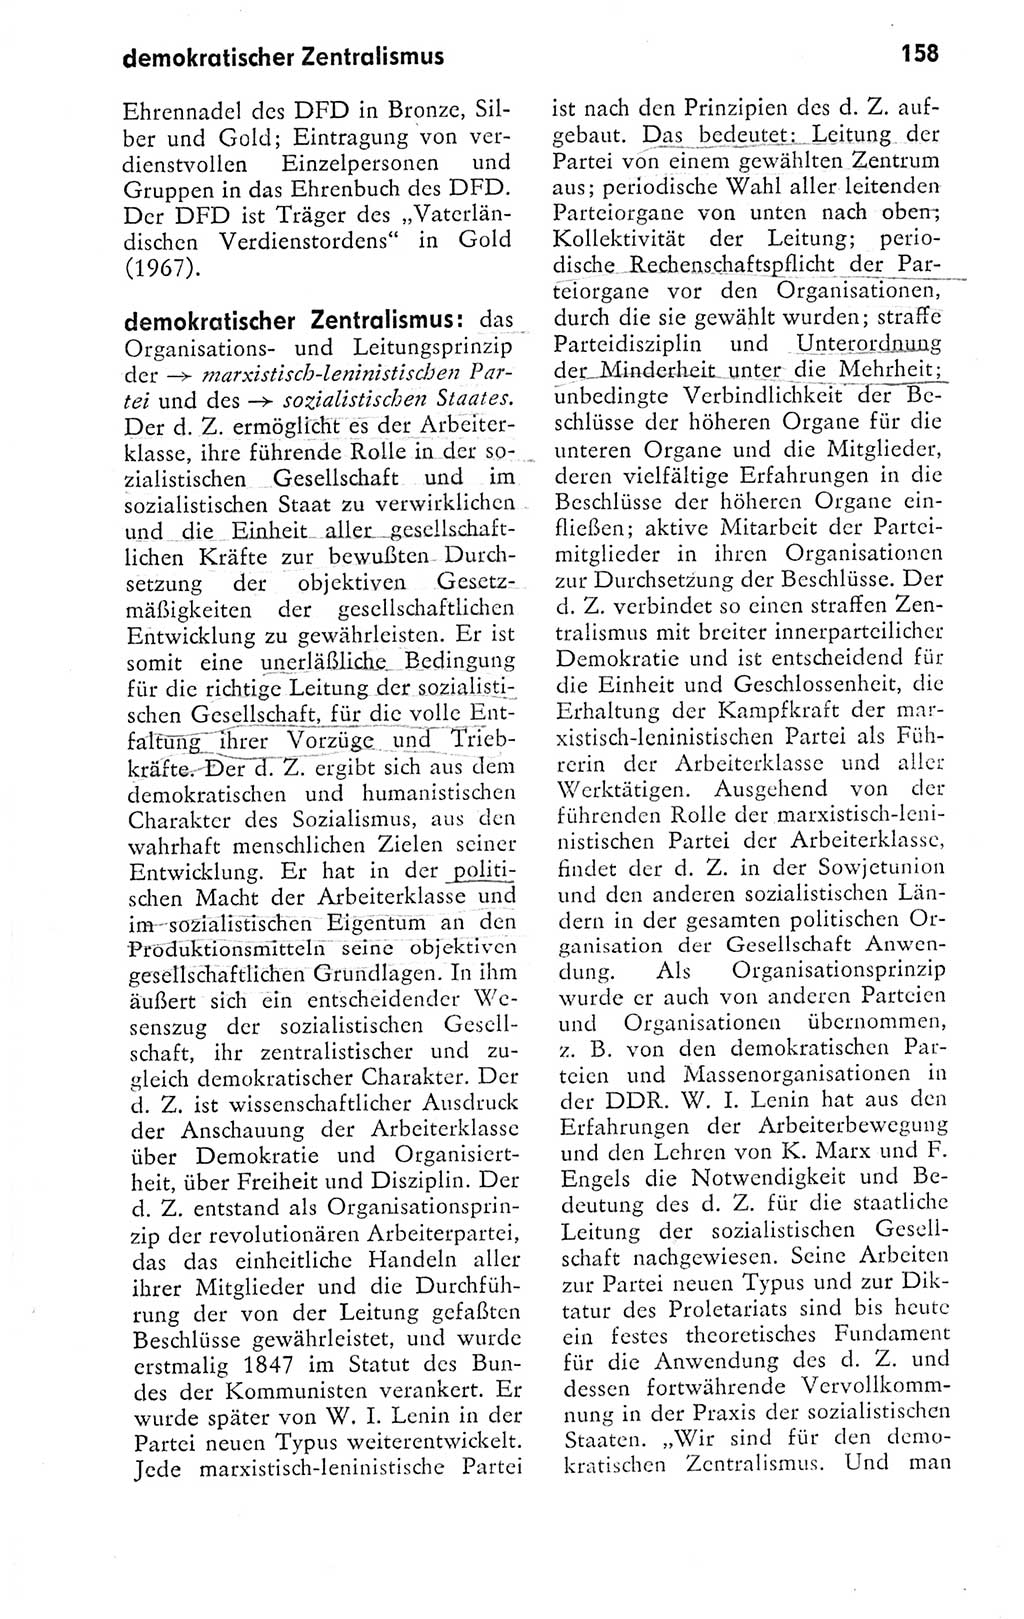 Kleines politisches Wörterbuch [Deutsche Demokratische Republik (DDR)] 1978, Seite 158 (Kl. pol. Wb. DDR 1978, S. 158)